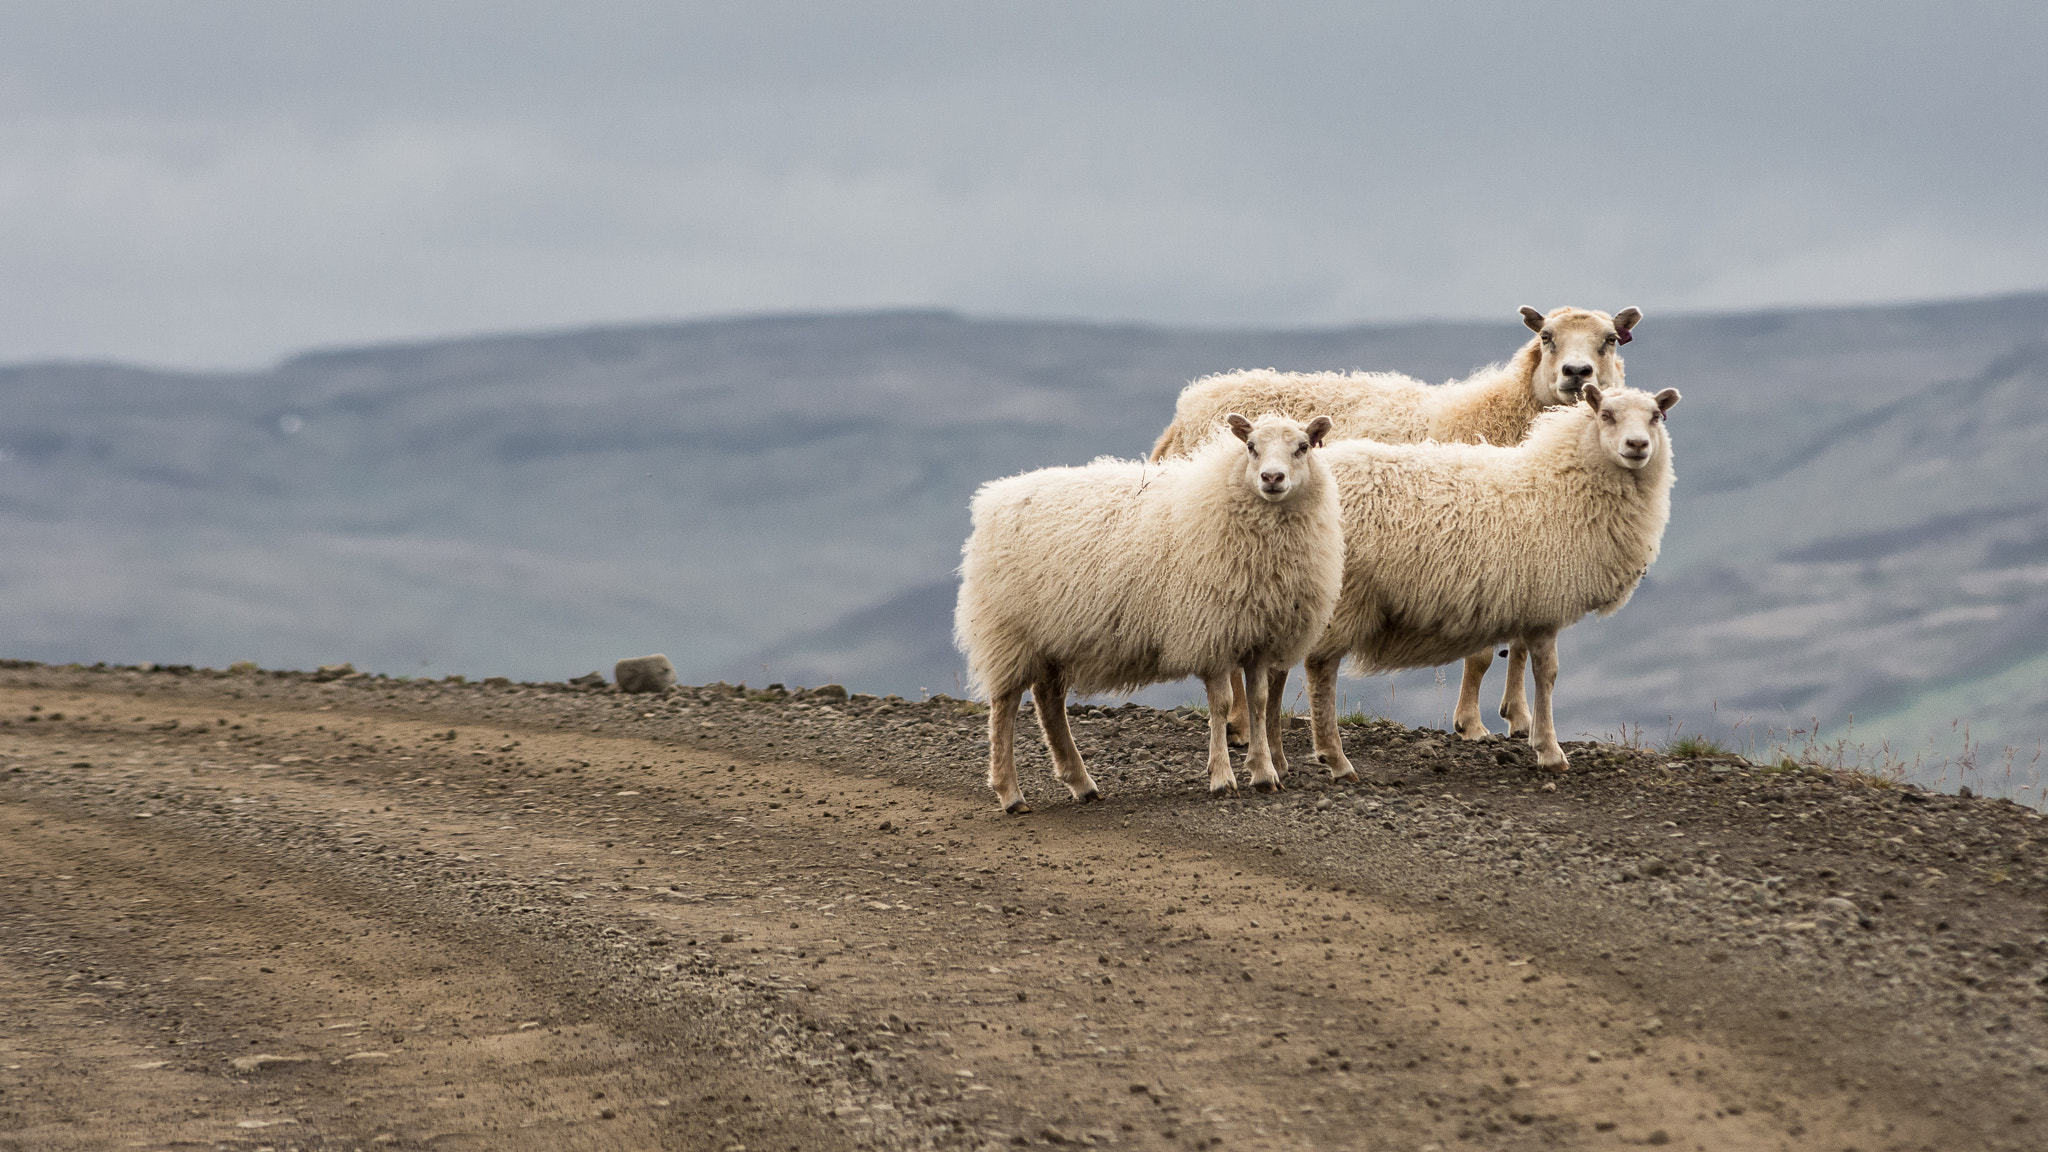 Nikon D7100 + AF Zoom-Nikkor 80-200mm f/2.8 ED sample photo. Icelandic sheep photography